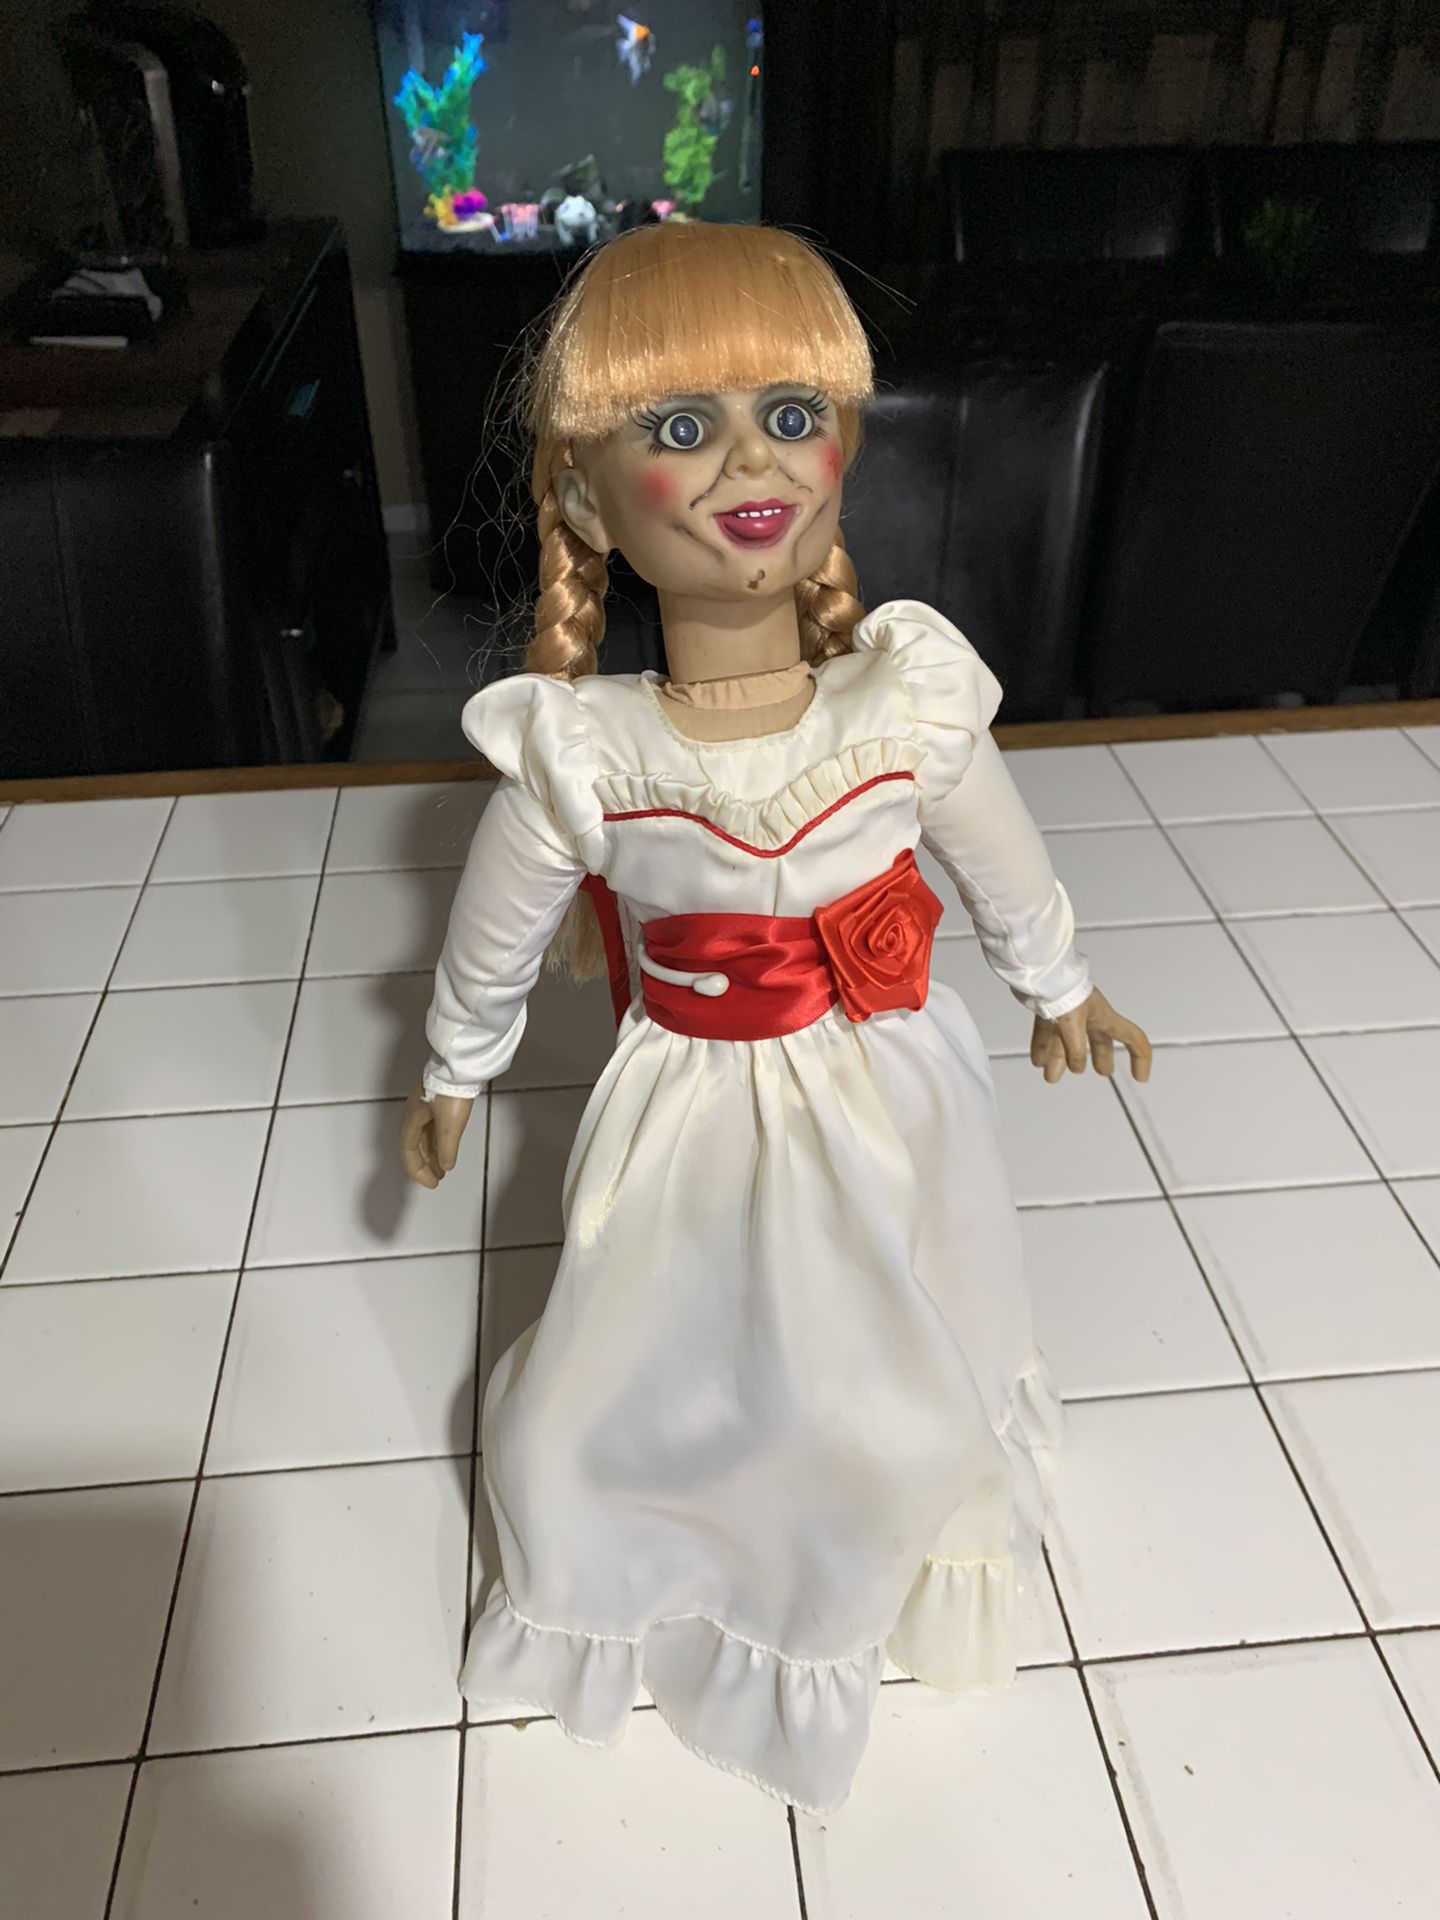 Annabelle Mezco doll